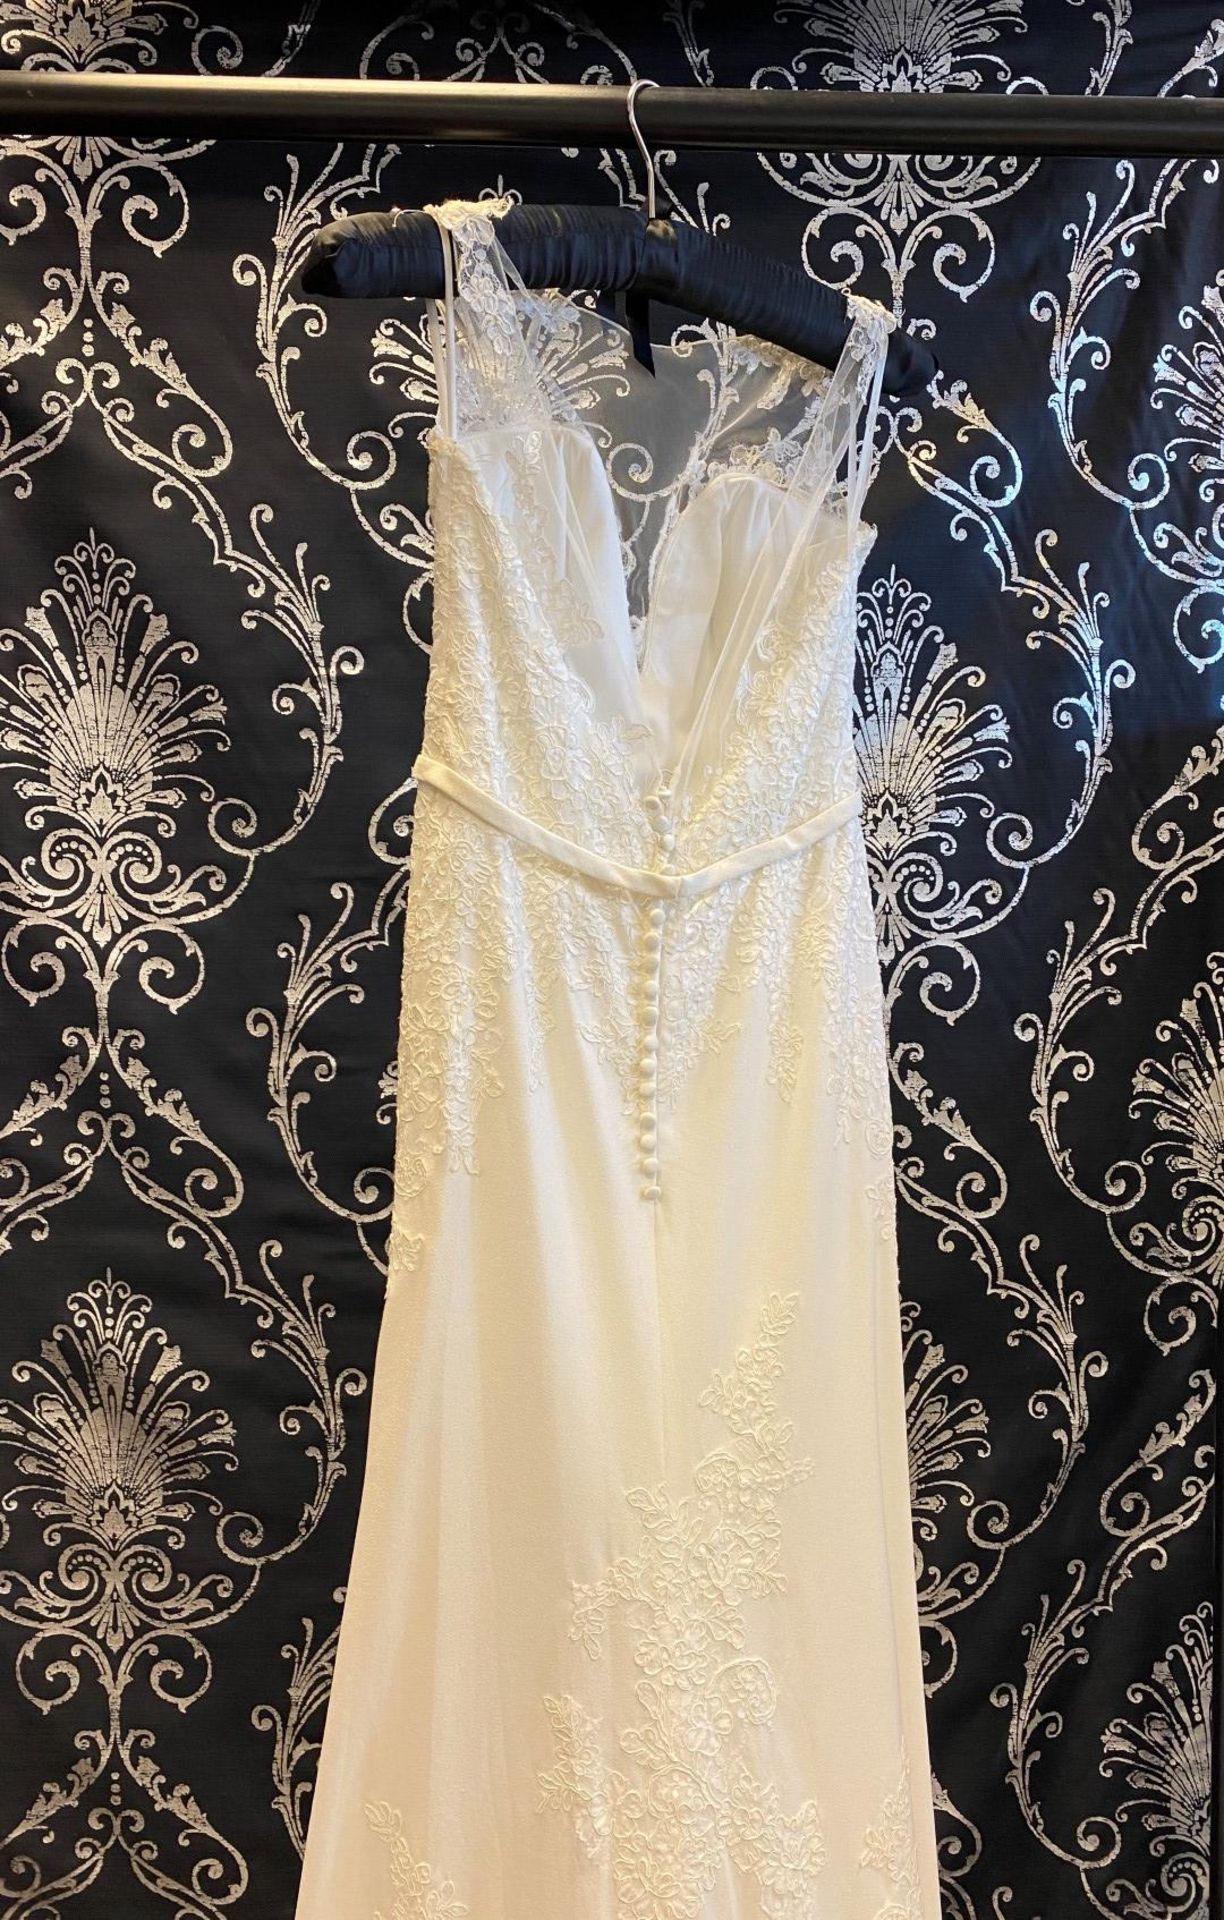 1 x MORI LEE Stunning Chiffon & Lace Biased Cut Designer Wedding Dress Bridal Gown RRP £1,500 UK 12 - Image 2 of 10